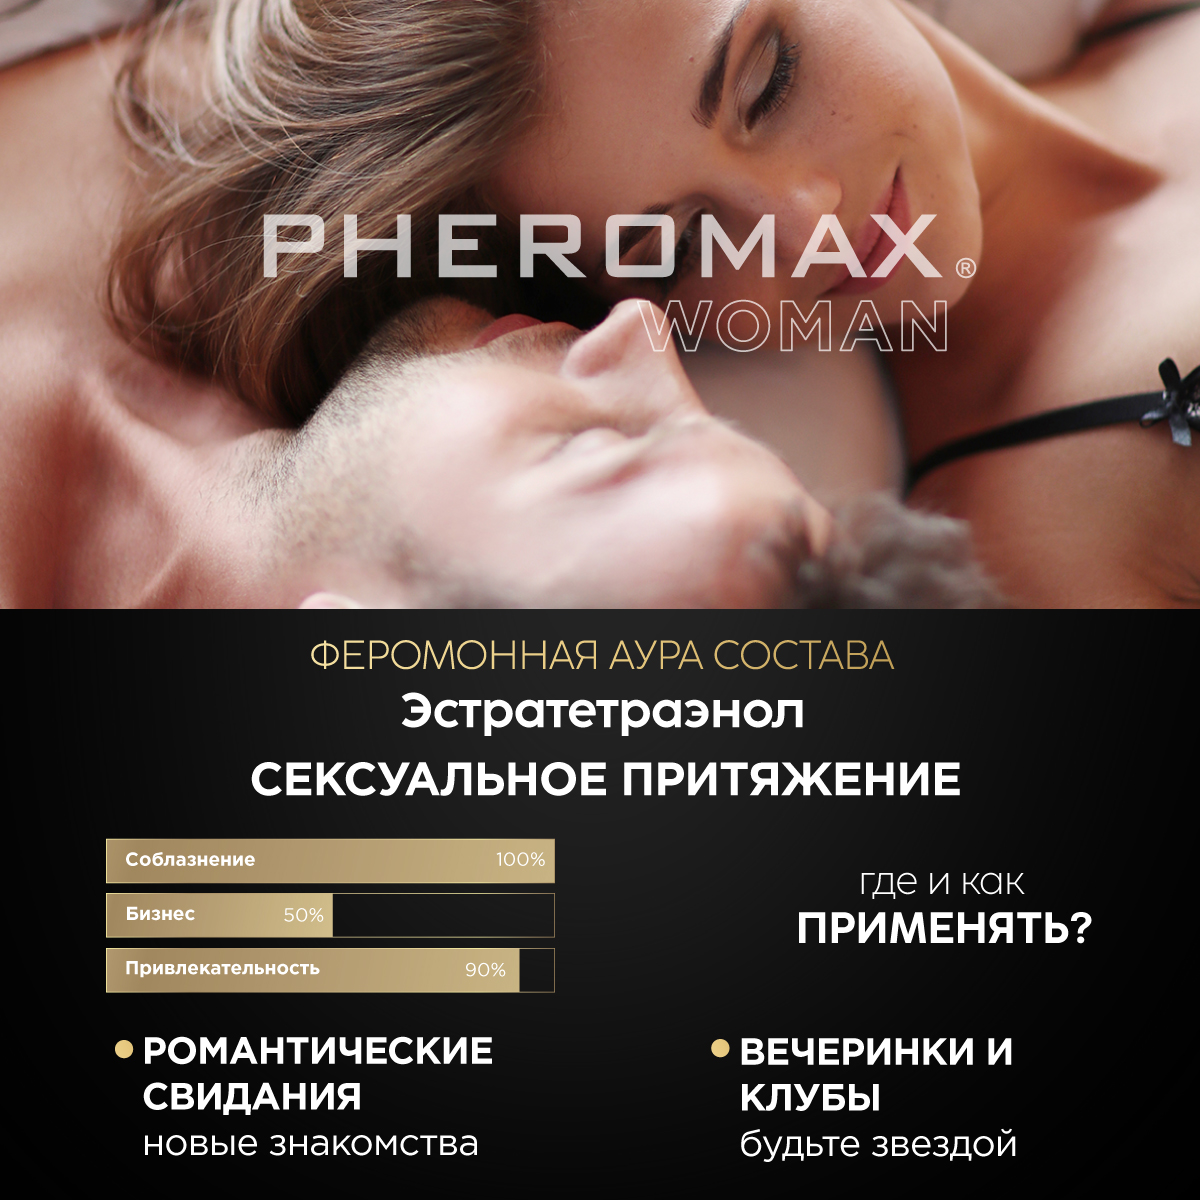 Концентрат феромонов для женщин Pheromax, 1 мл